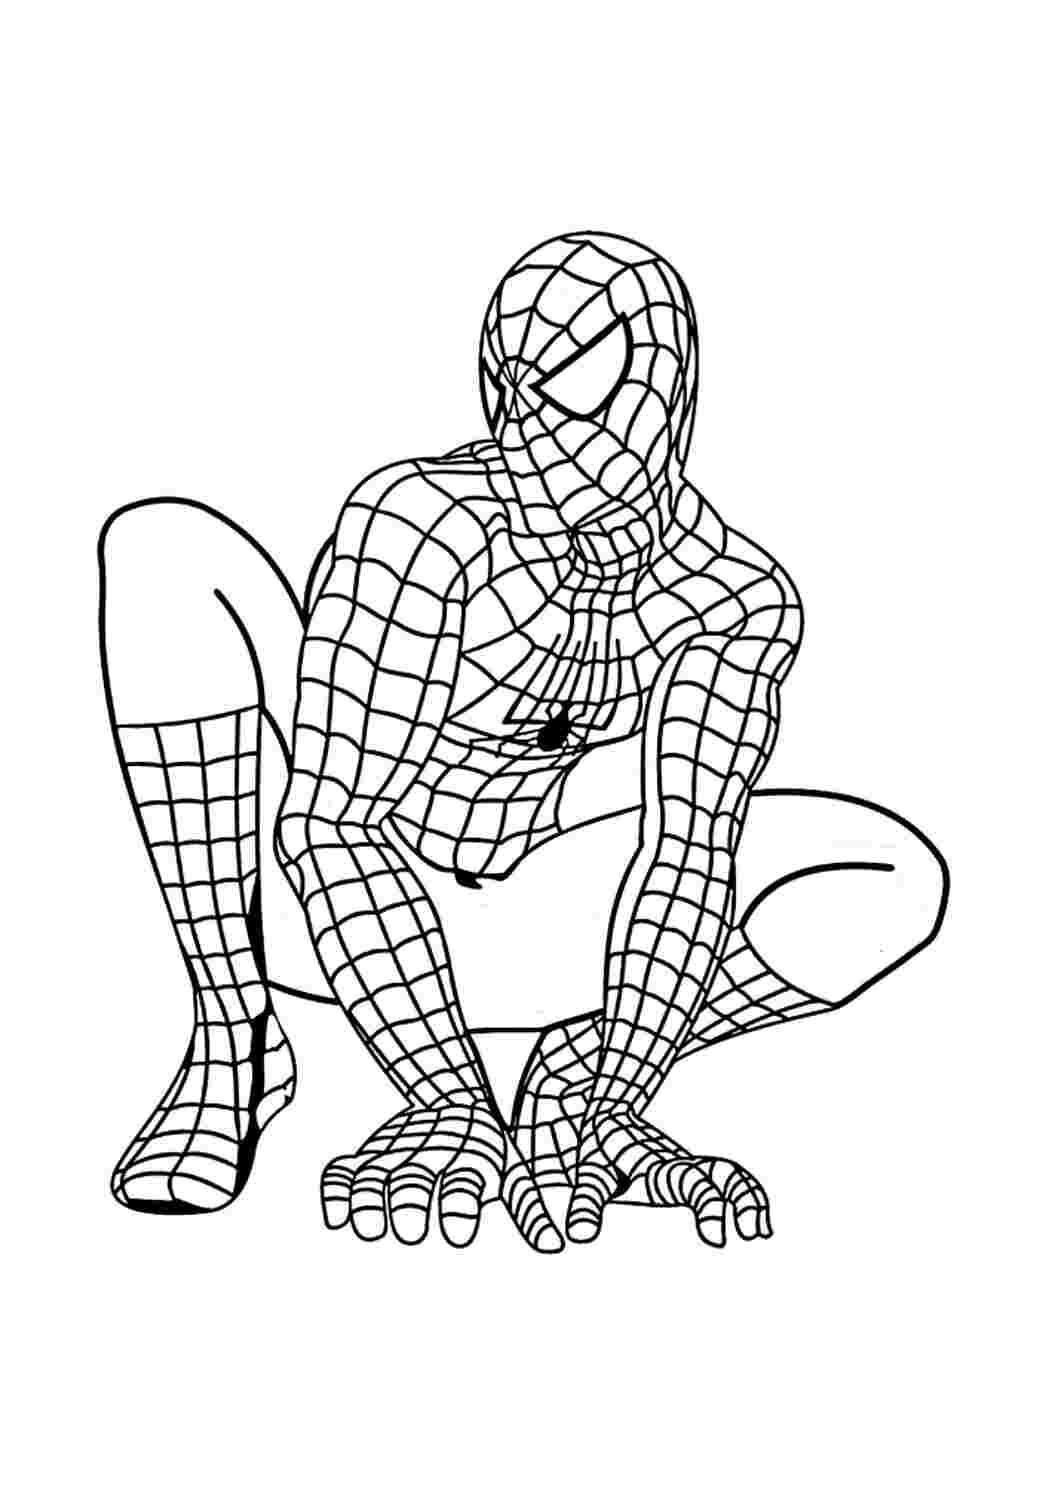 Питер Паркер - Человек-паук Раскраски скачать и распечатать бесплатно.